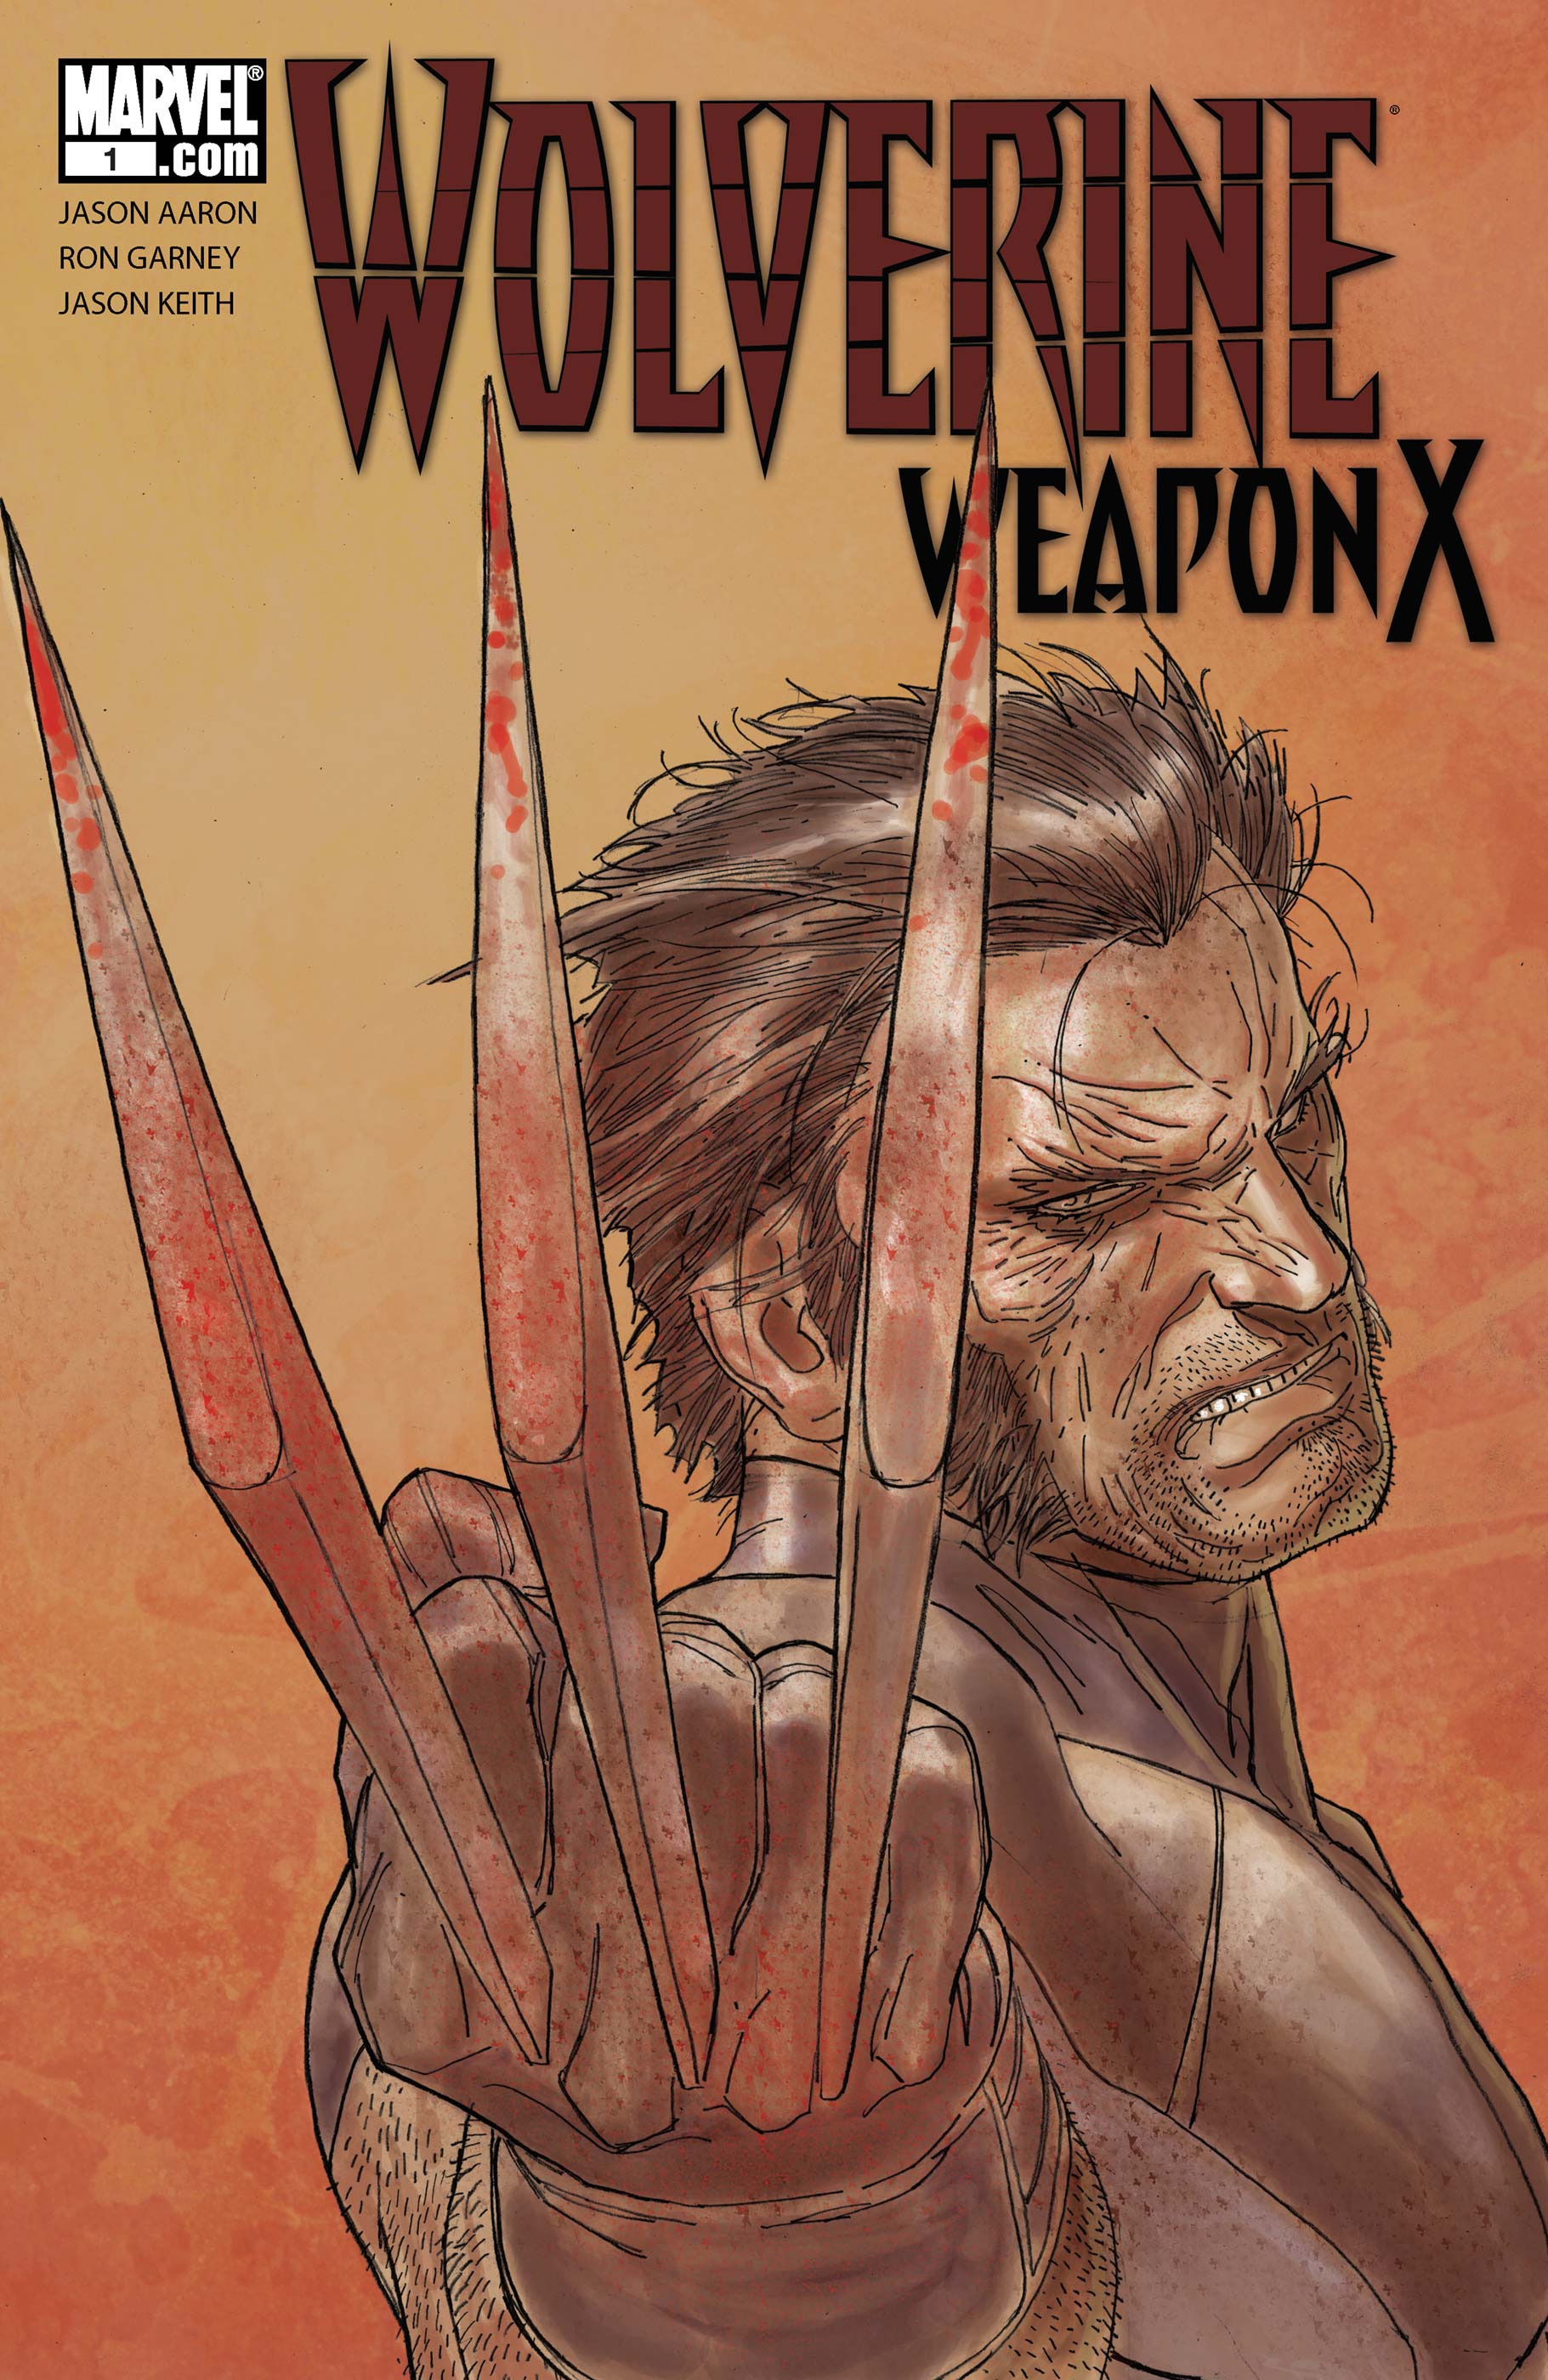 Wolverine Weapon X (2009) #1